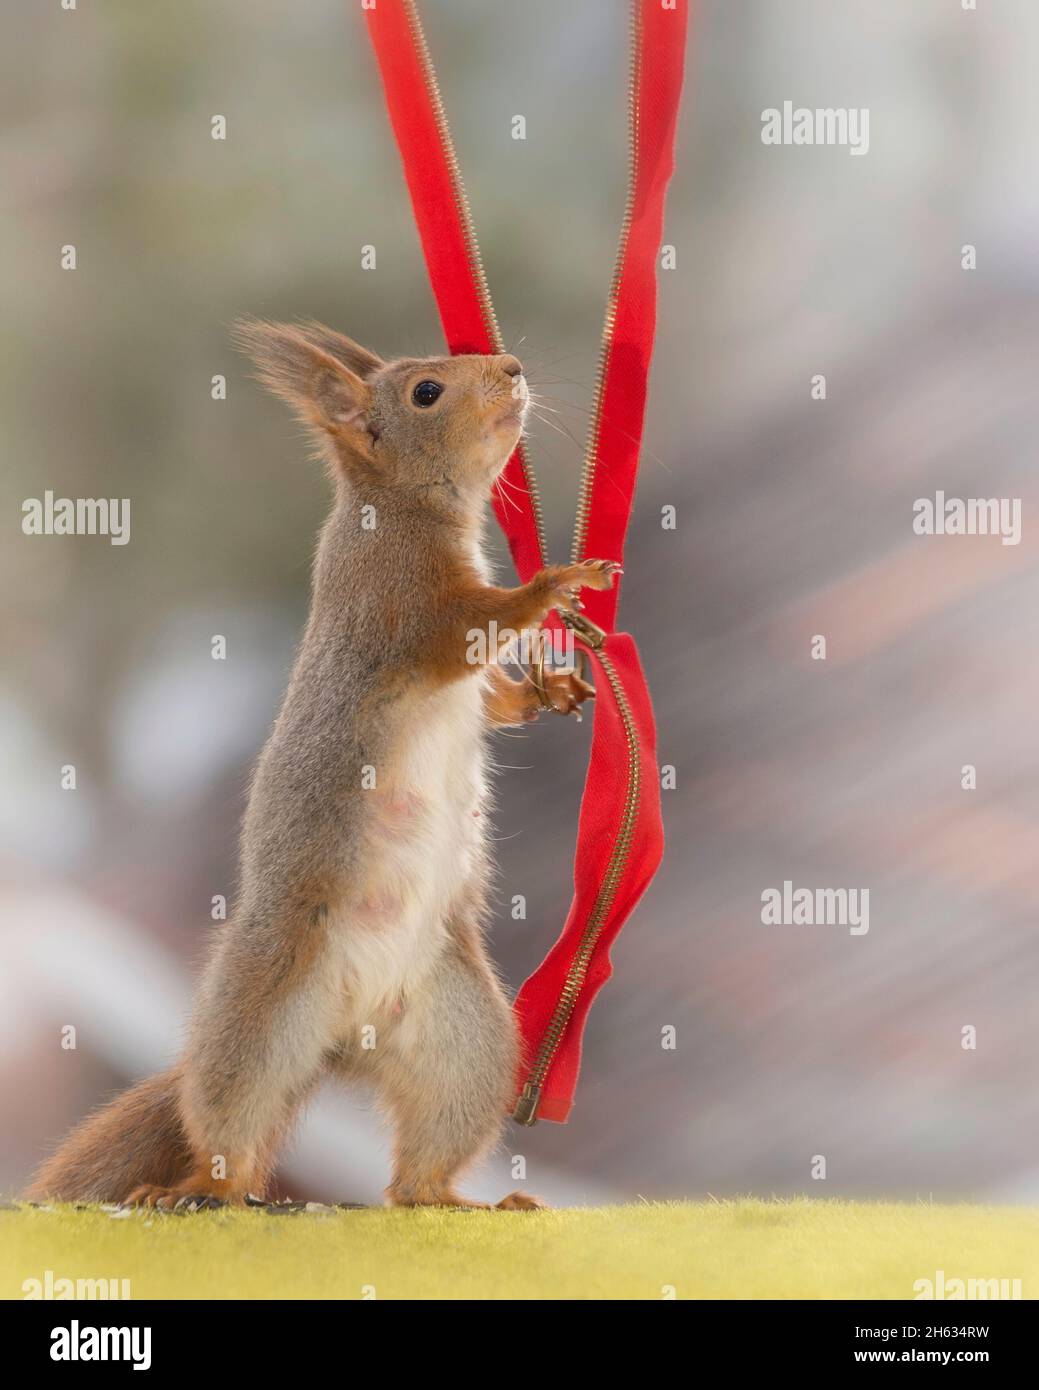 Nahaufnahme des roten Eichhörnchens mit einem roten Reißverschluss Stockfoto